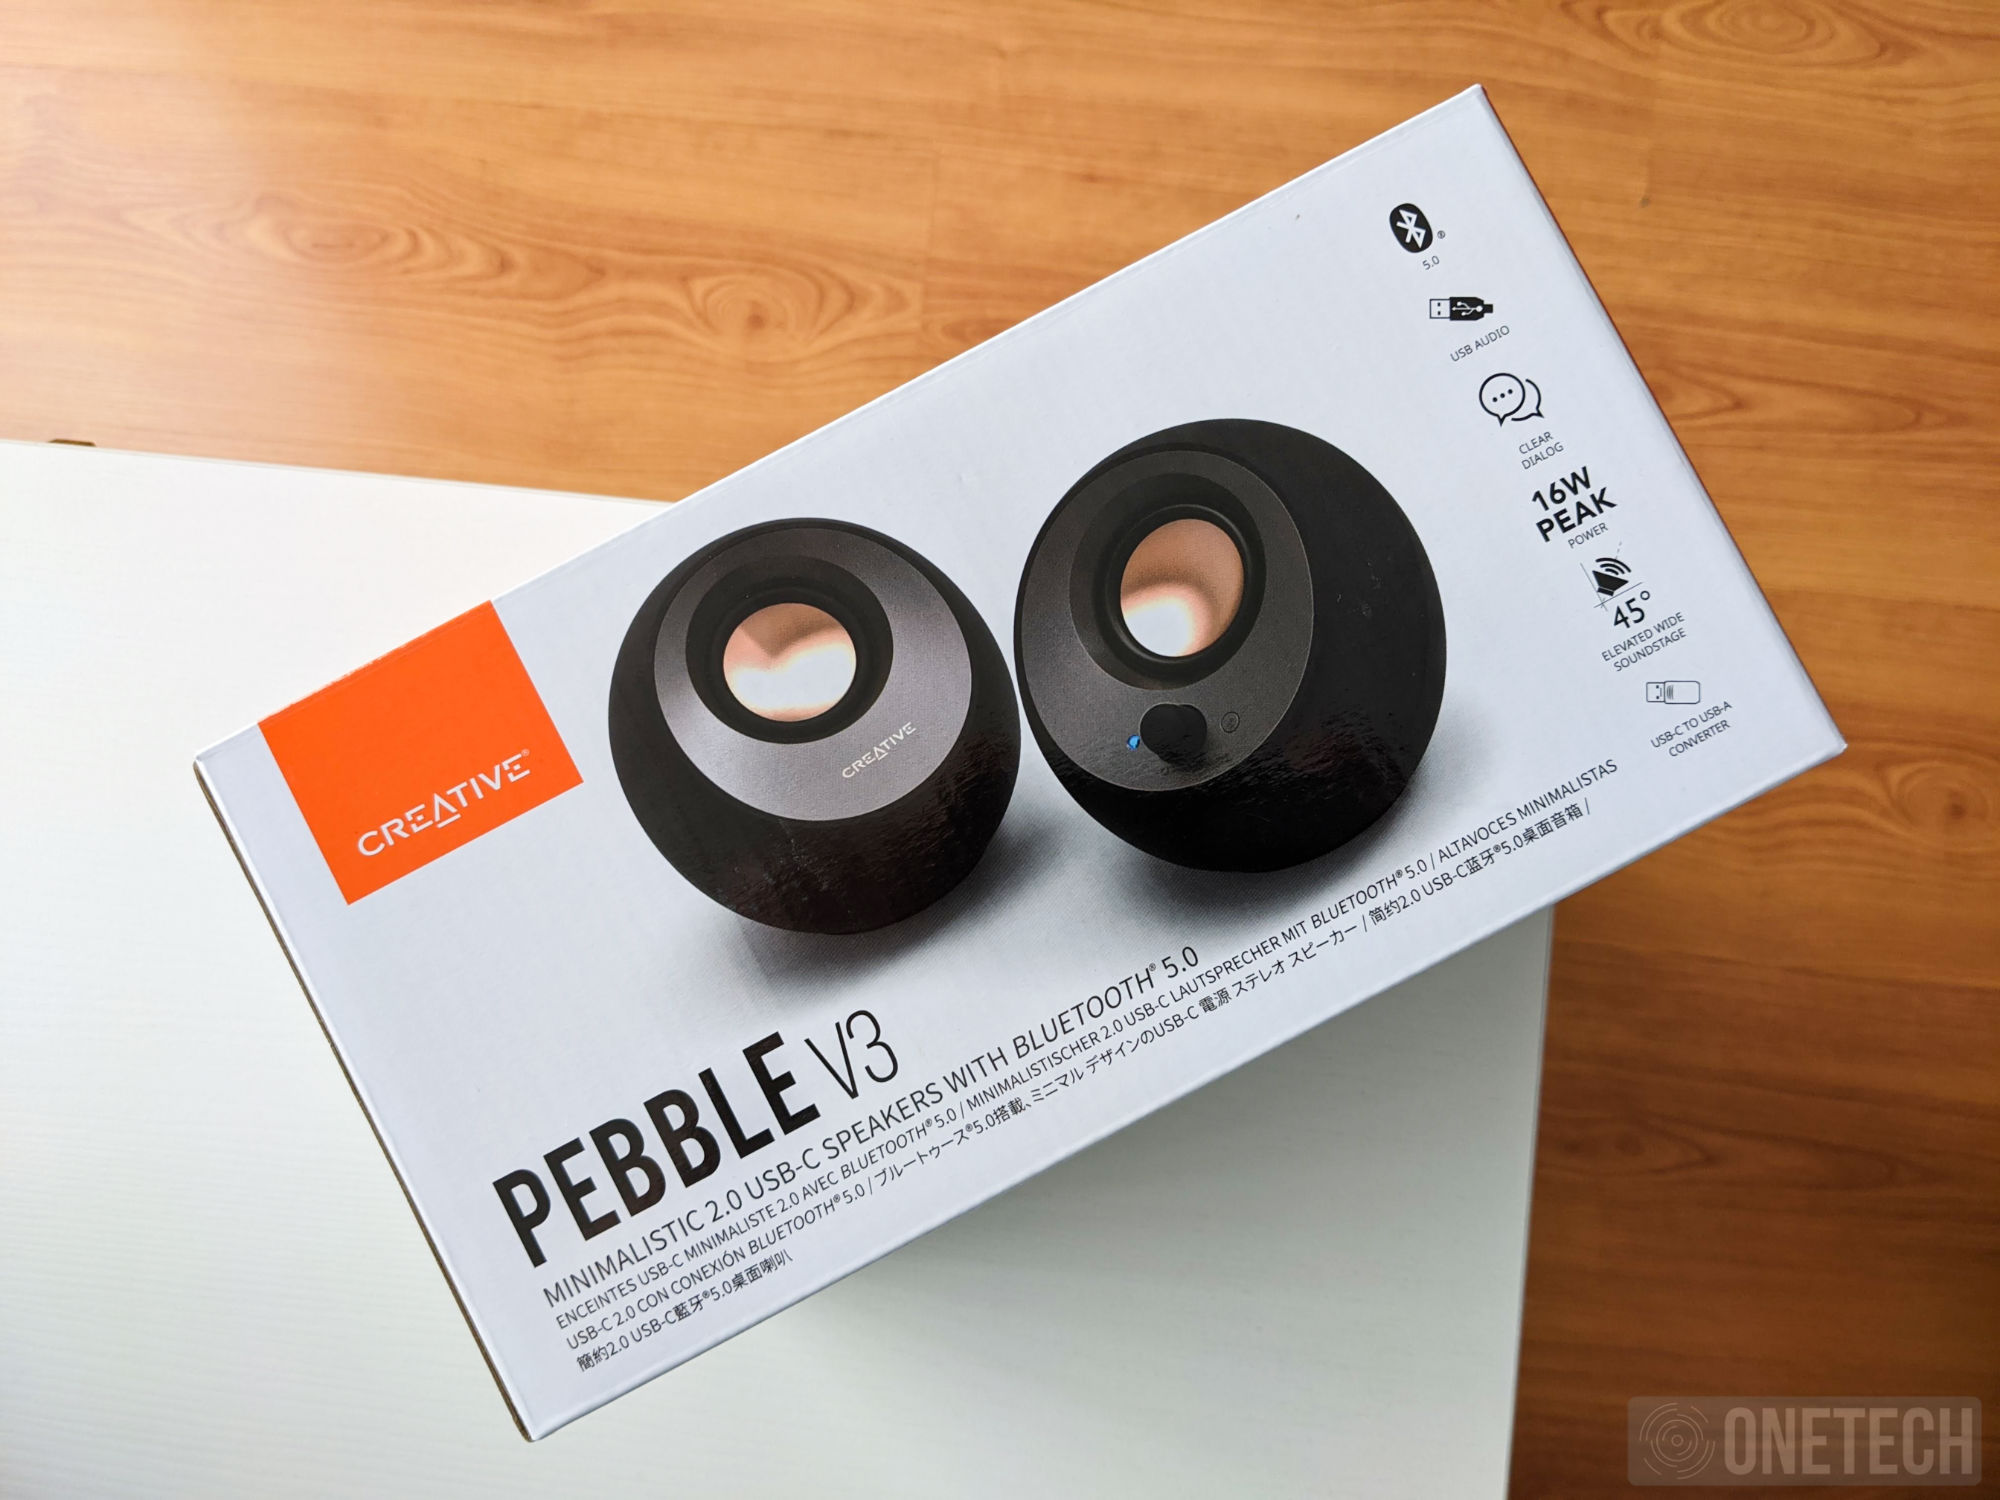 Creative presenta los Pebble V3, la tercera generación de su